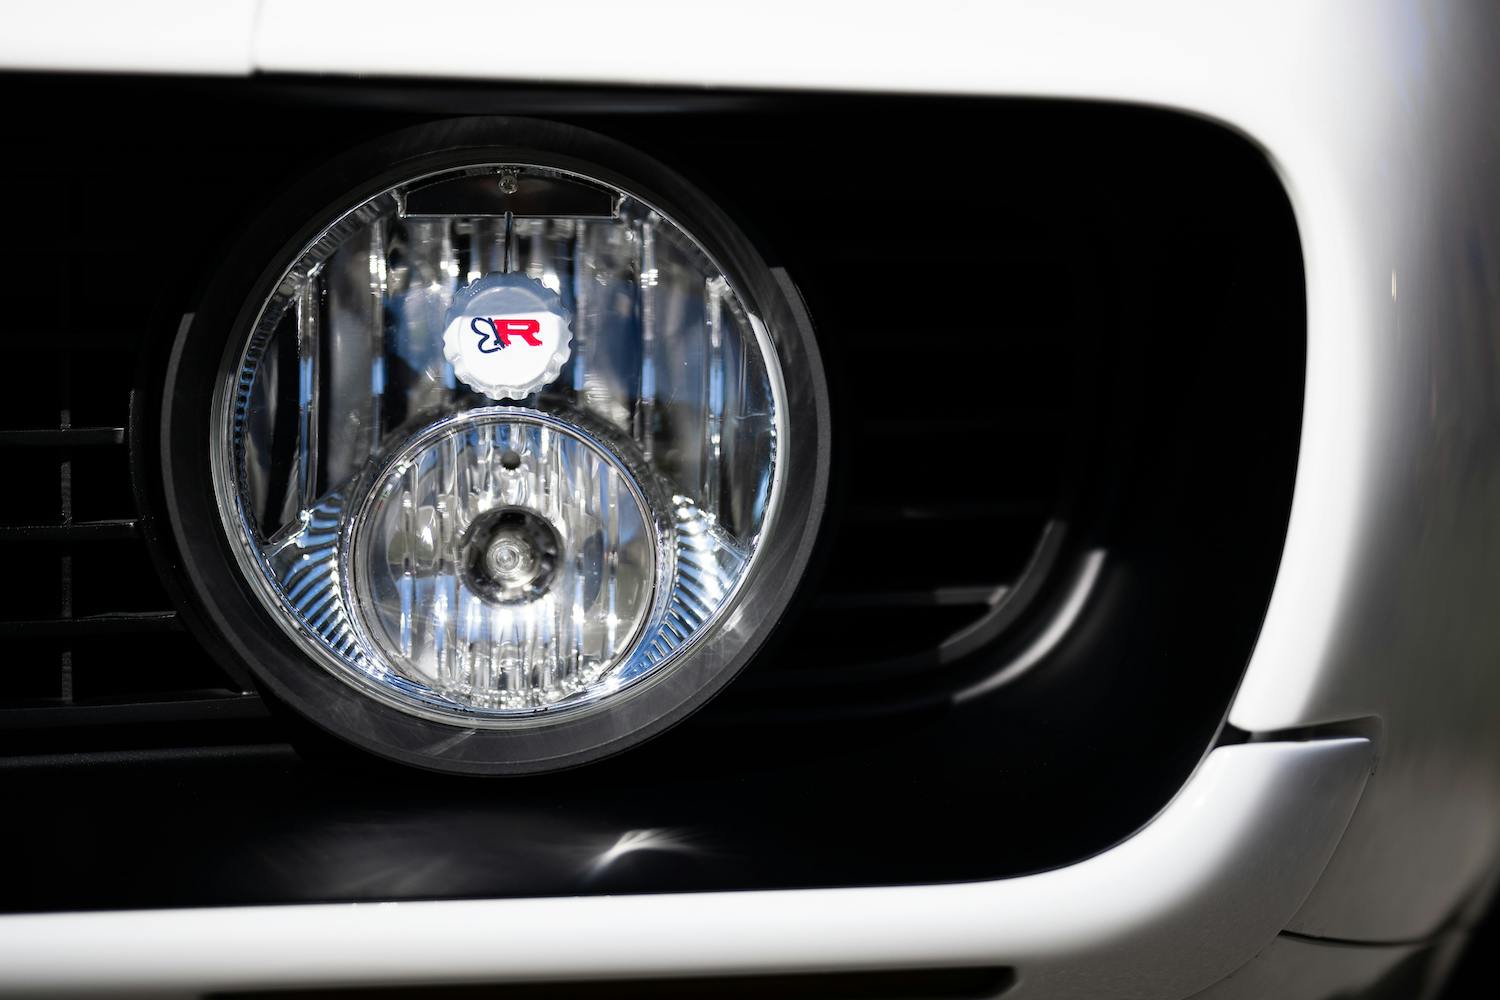 Strode 1969 Chevy Camaro headlight detail